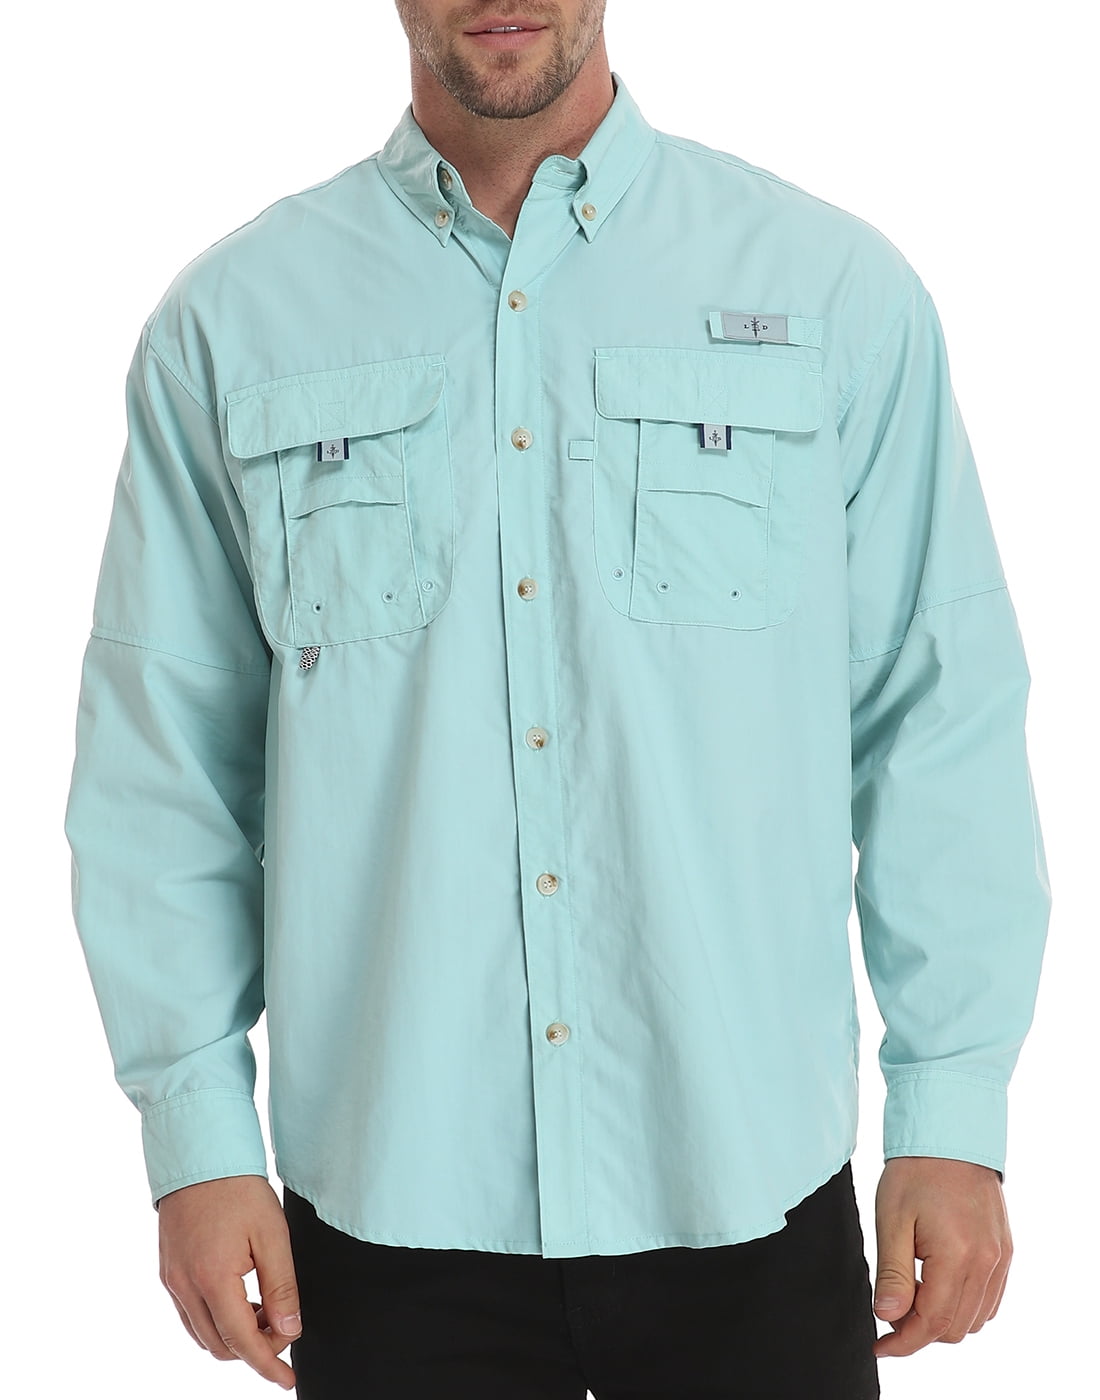 LRD Men's UPF 30 Long Sleeve Button Down Fishing Shirts Light Blue